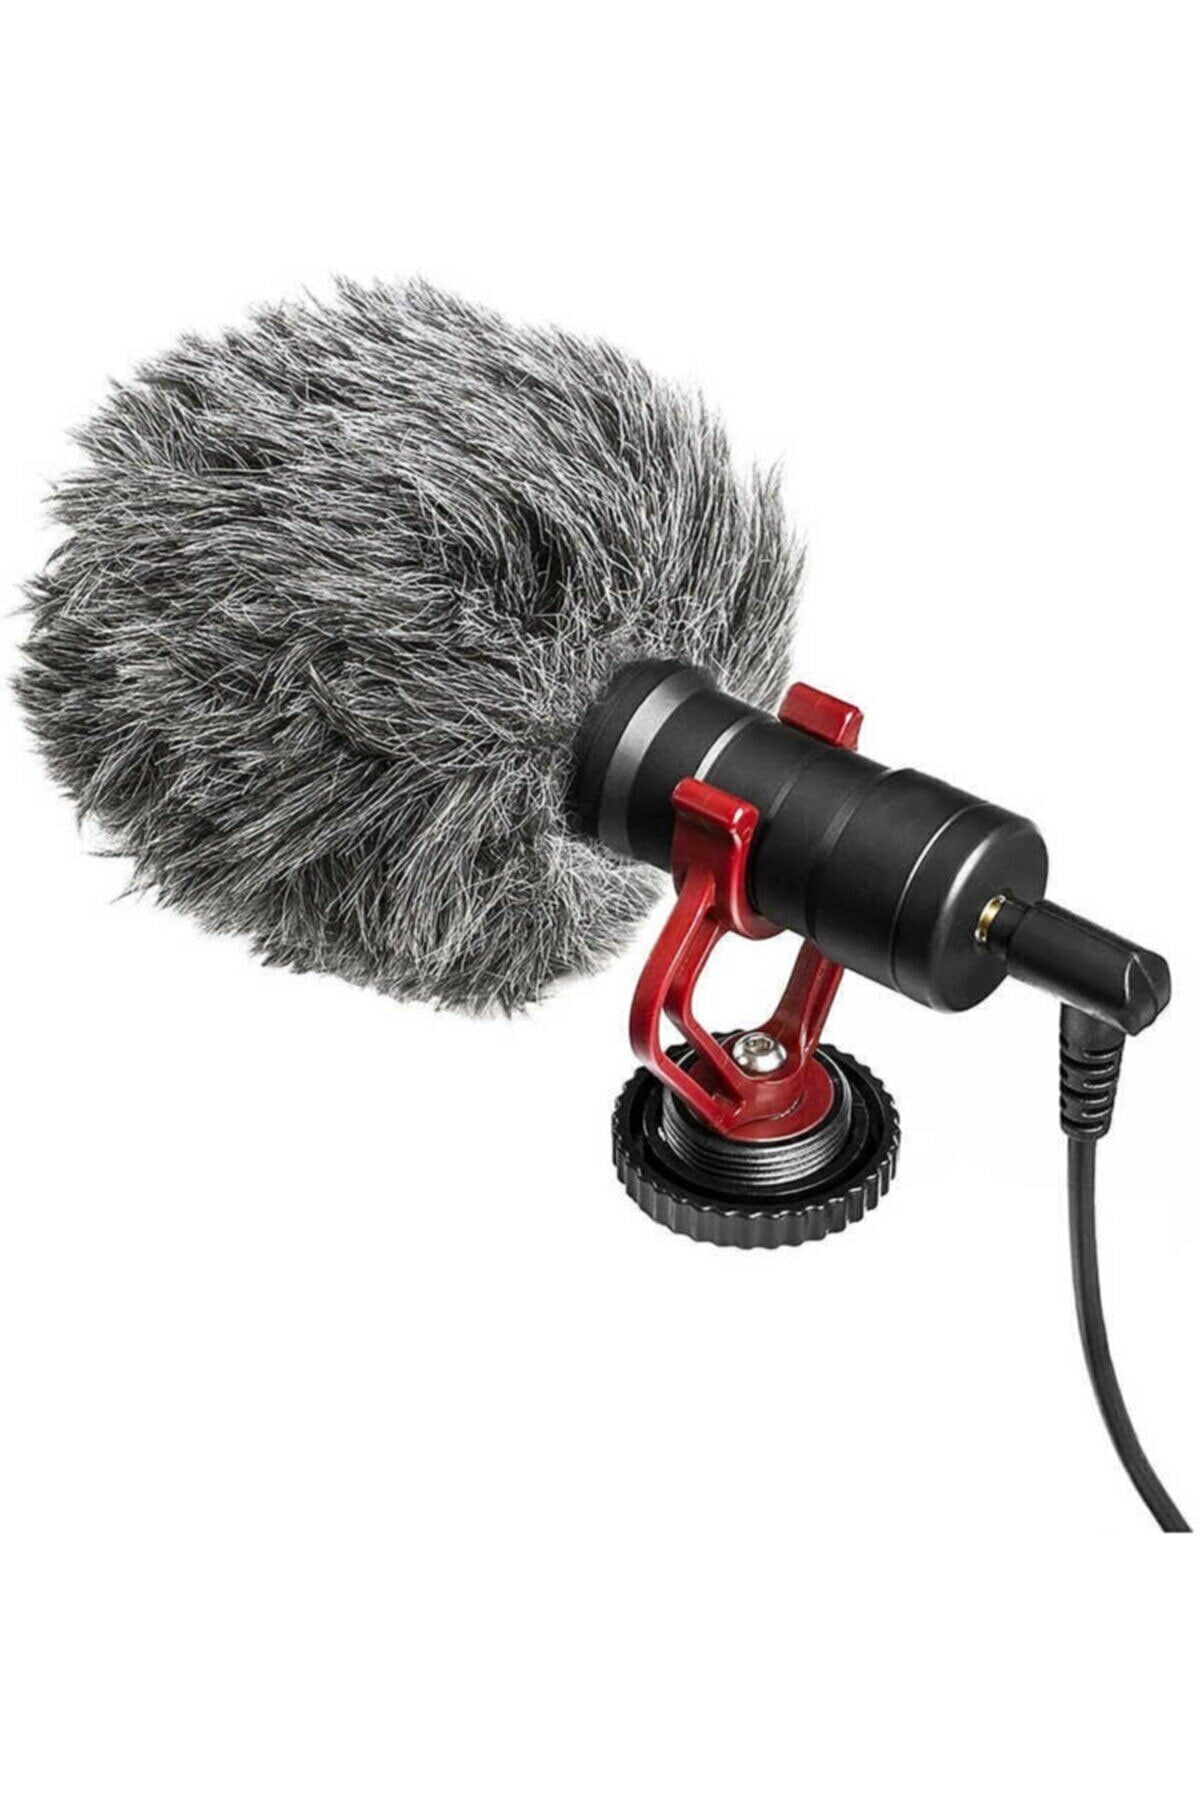 EN SİGA Kaliteli Ses Algılayıcı Gürültü Emici Condenser Mikrofon